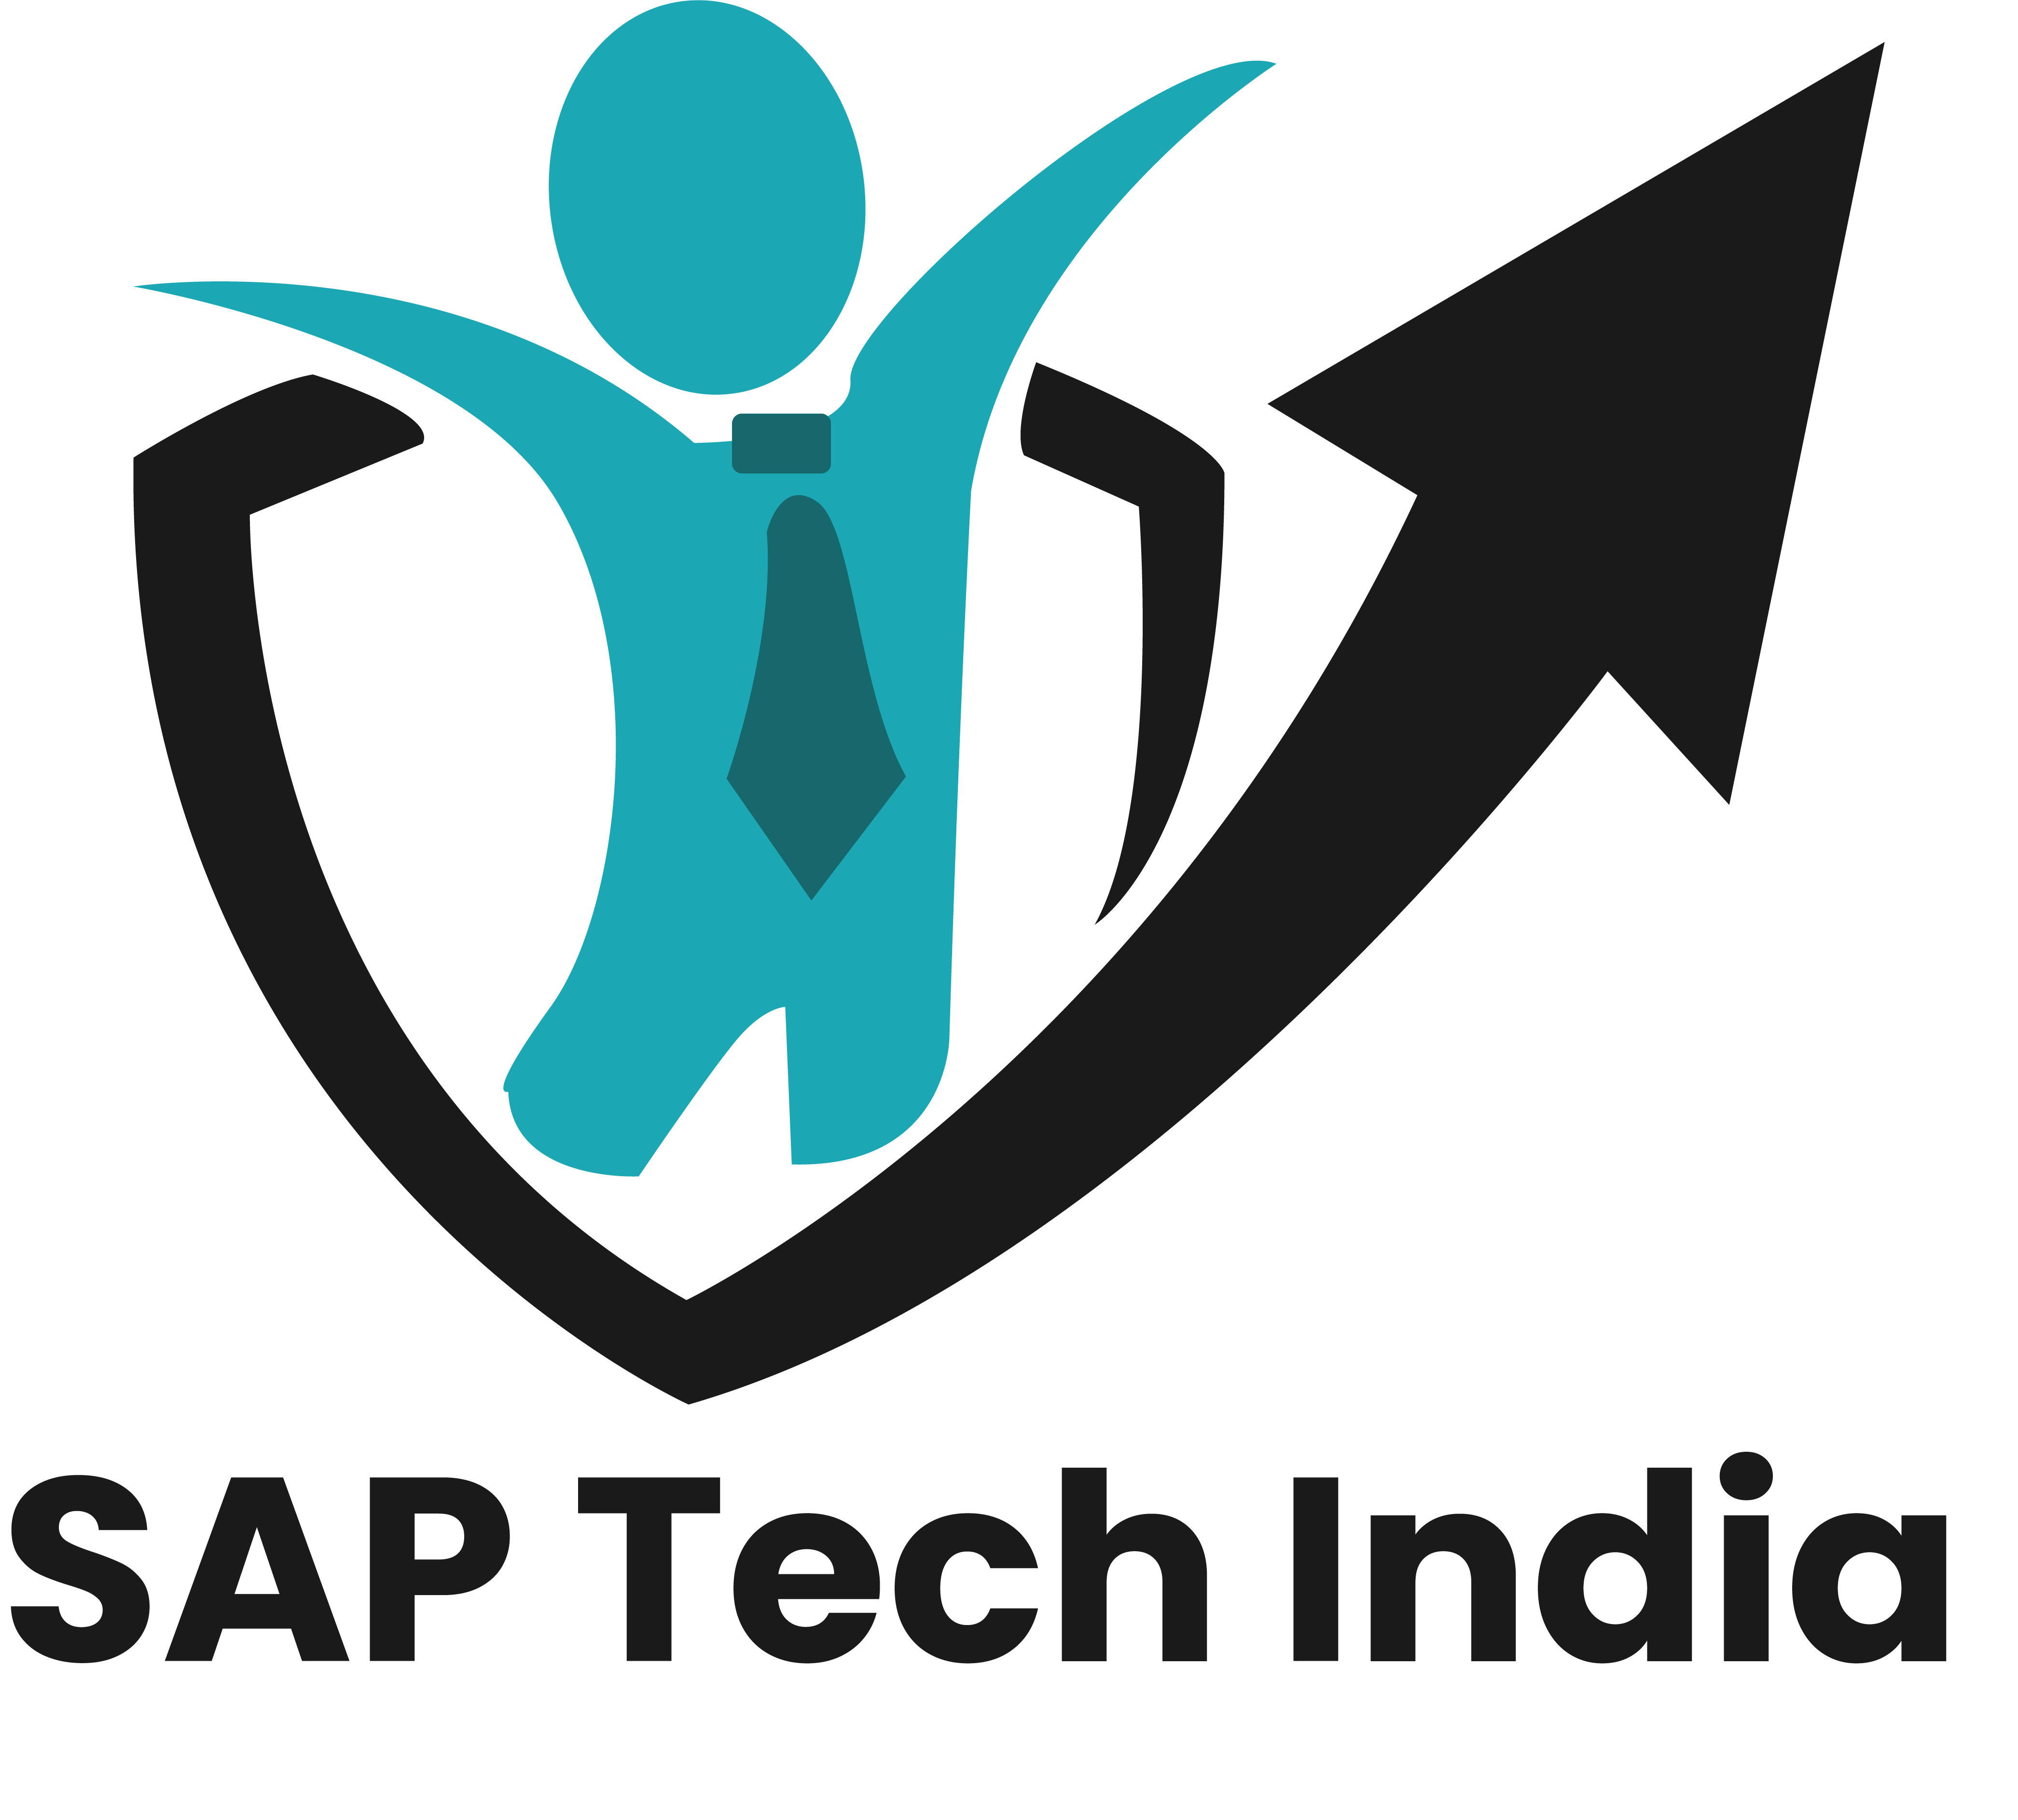 SAP Tech India